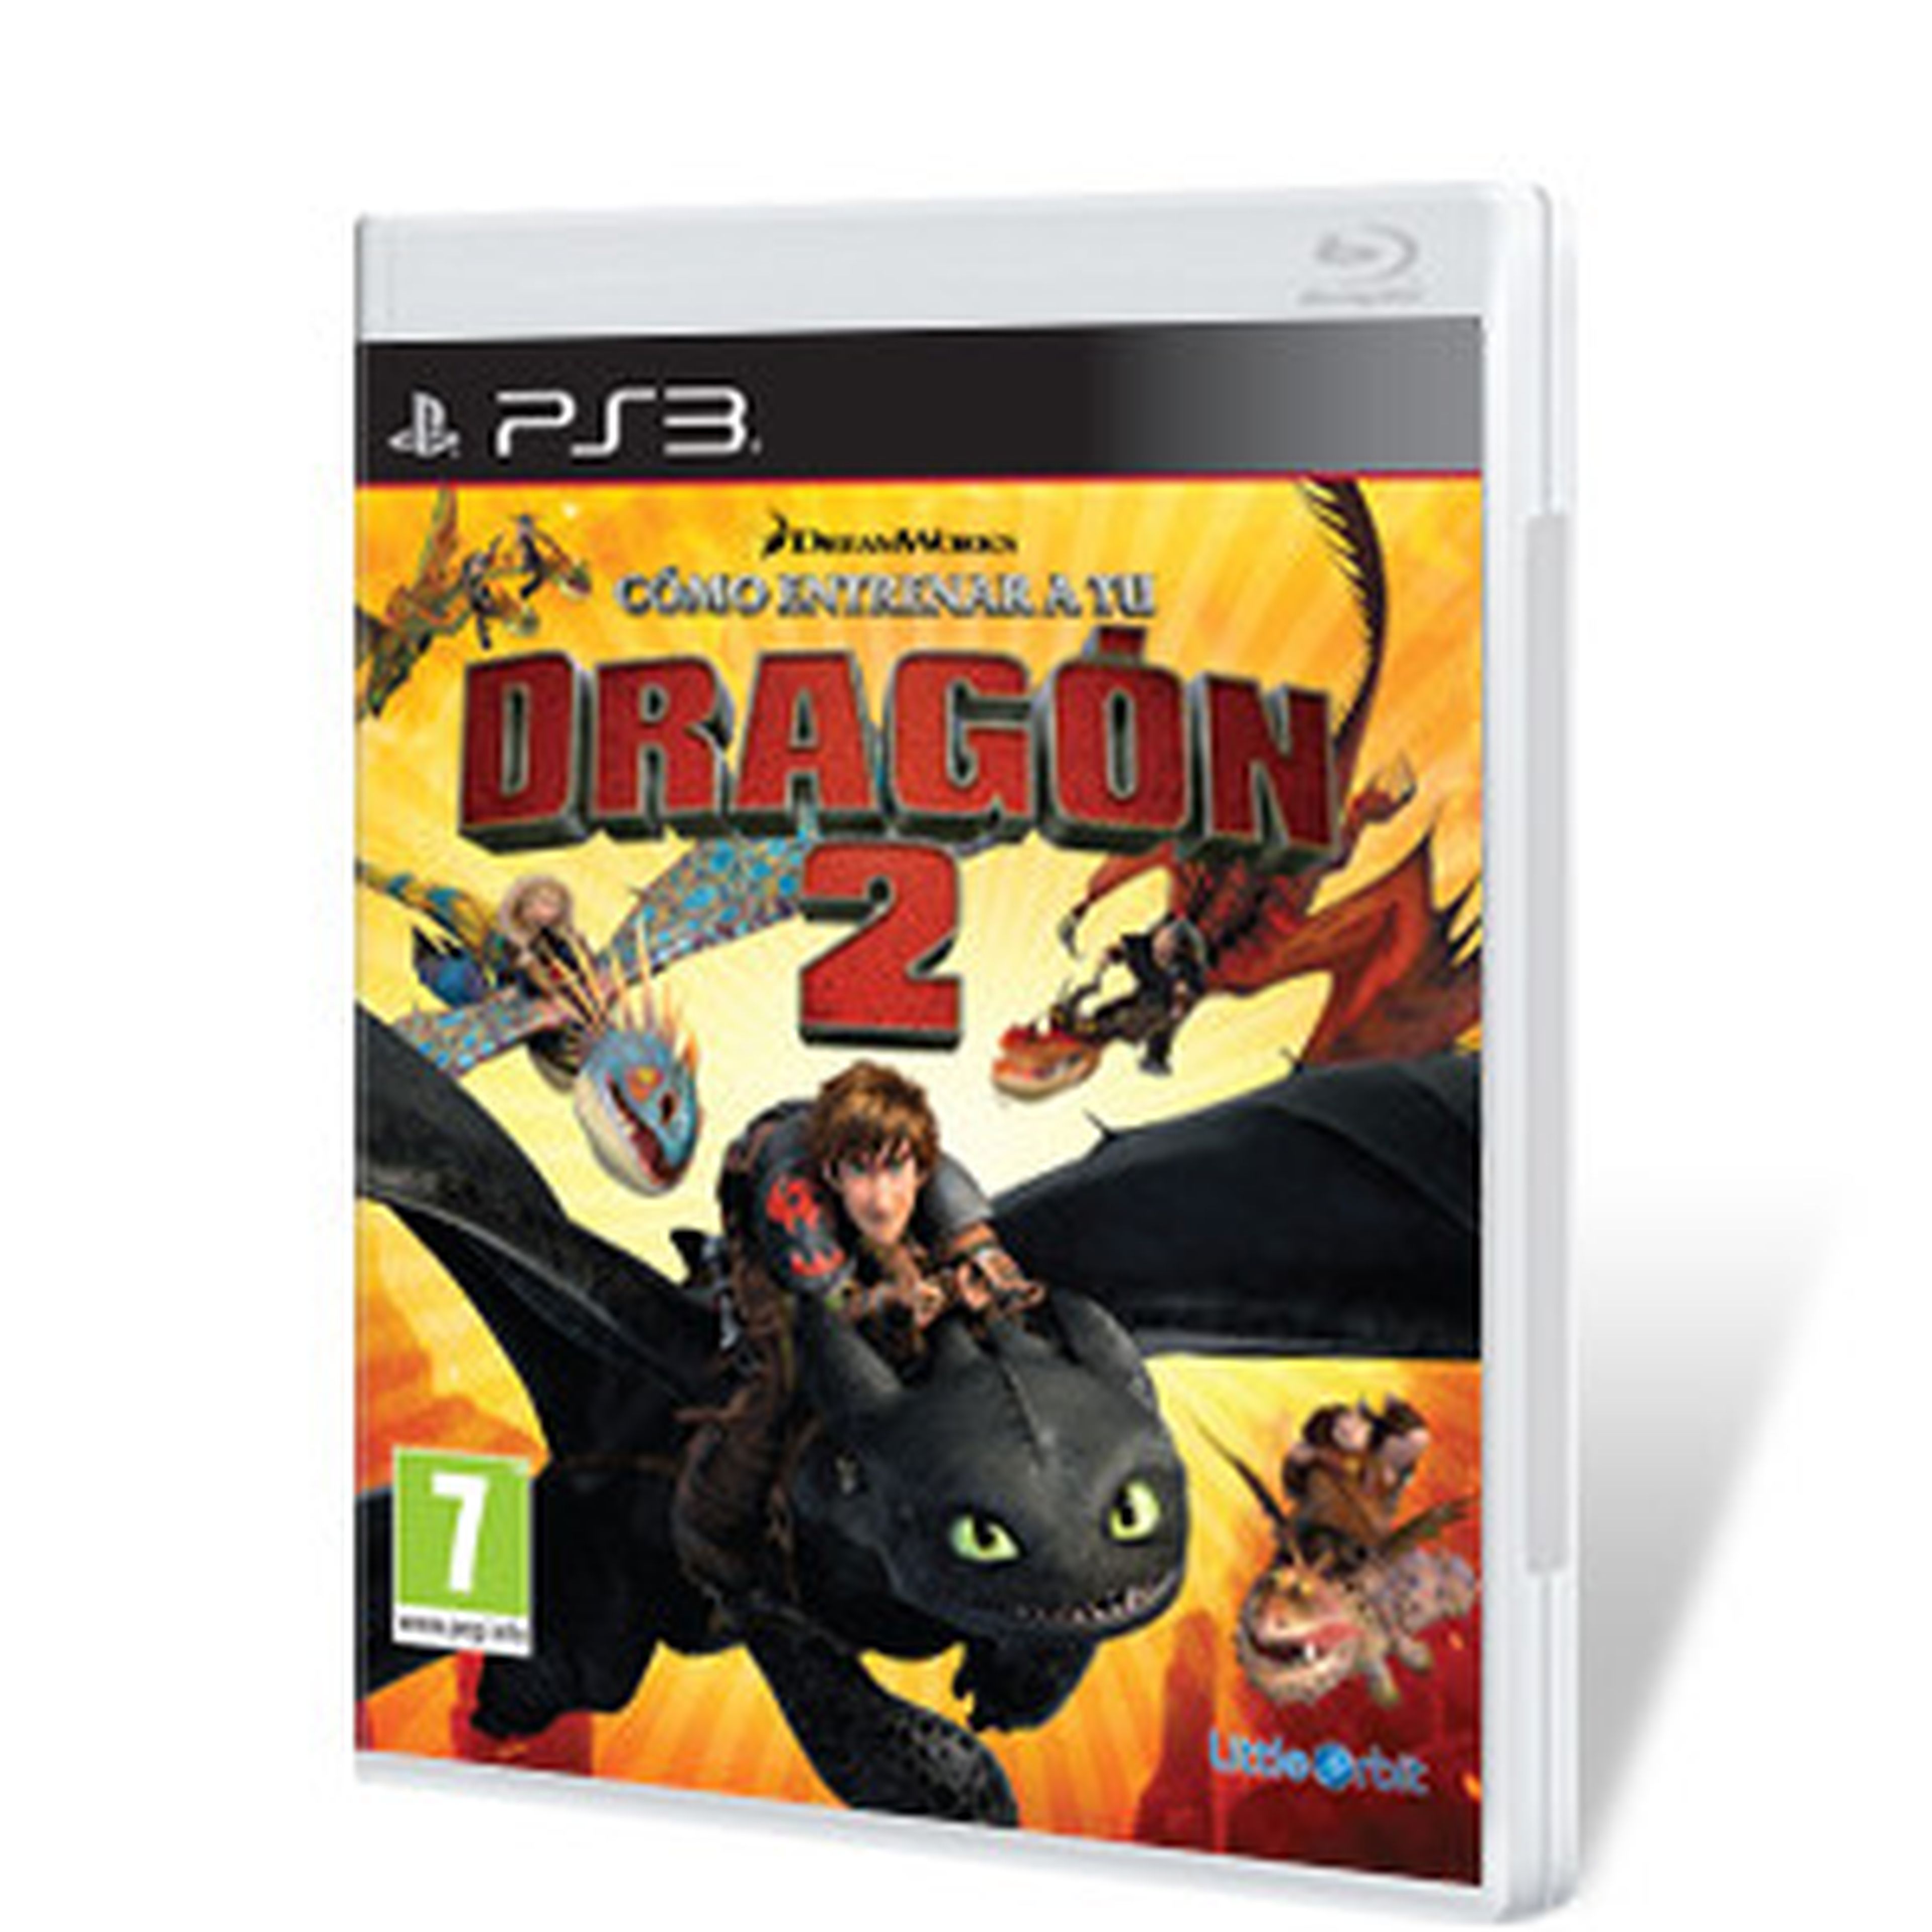 Cómo entrenar a tu dragón 2 para PS3